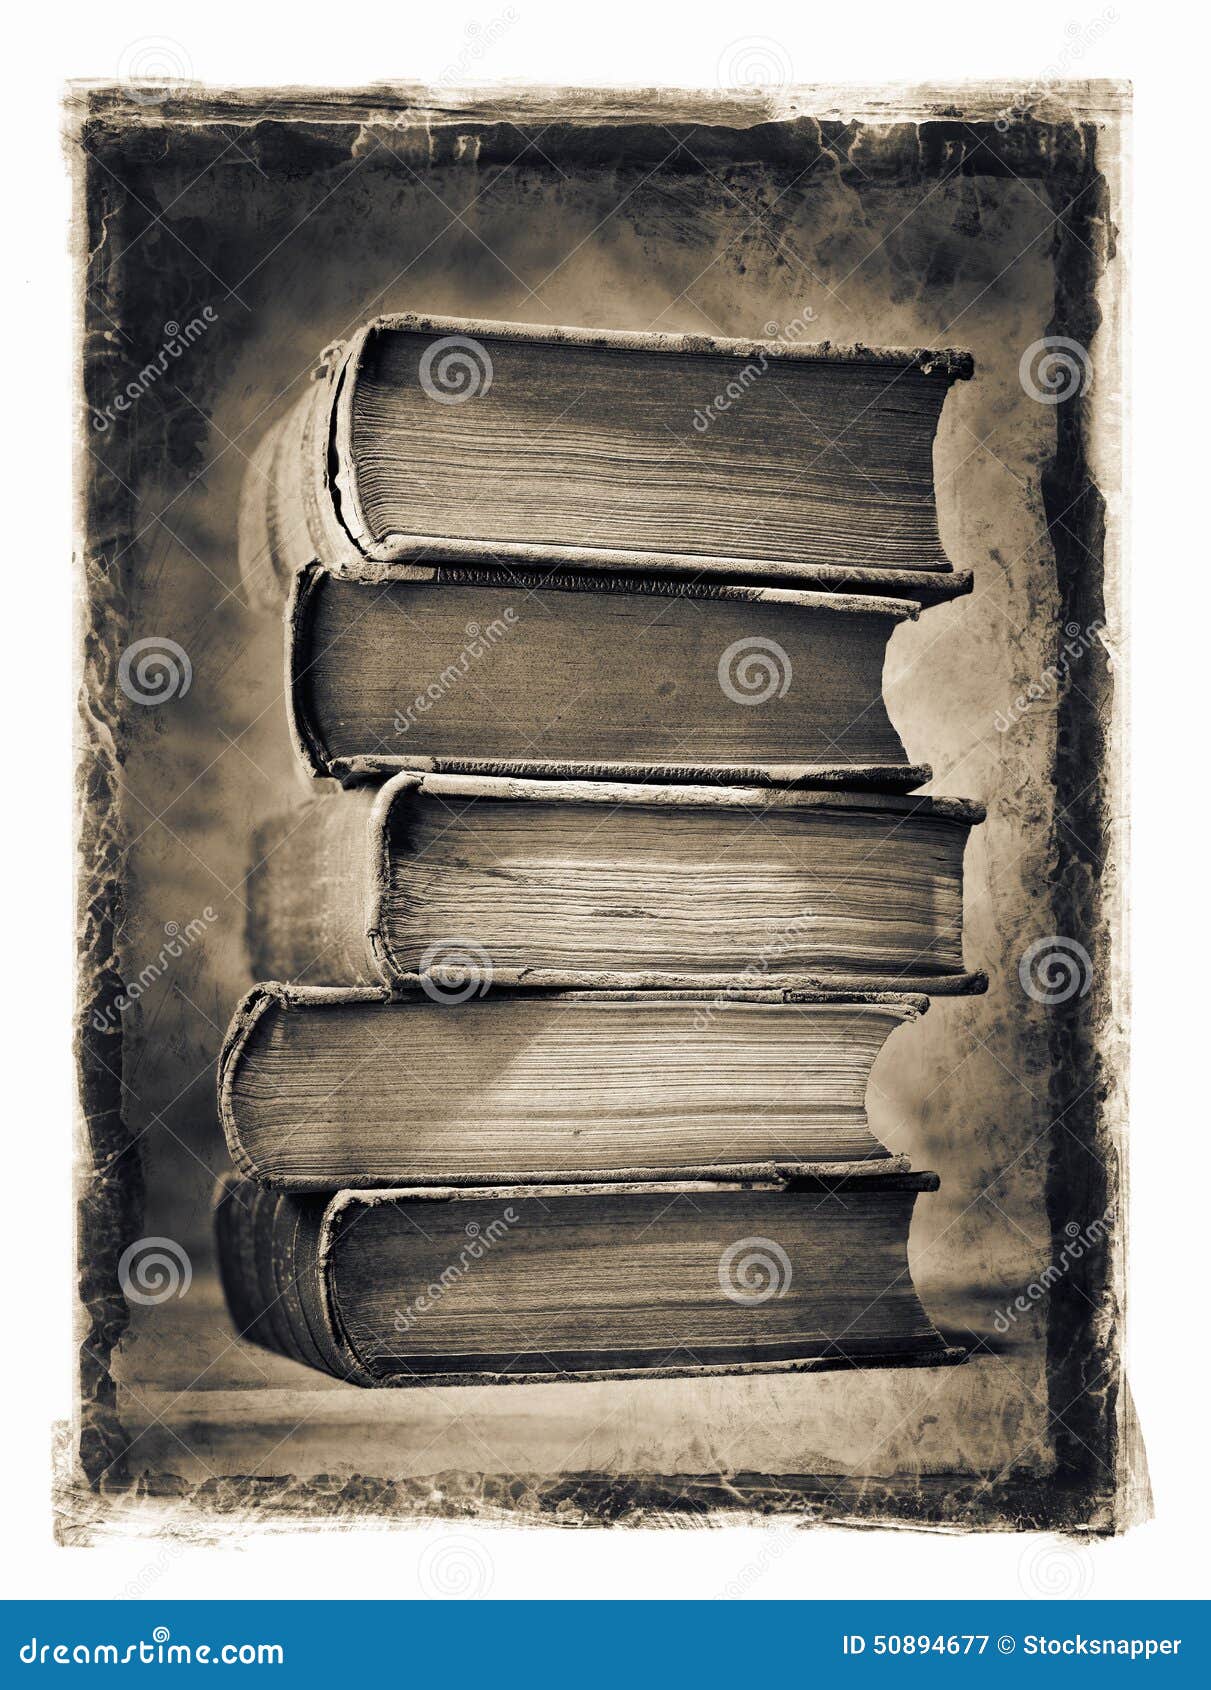 Worn book. Старинные книги порванные. Разорванная старинная книга. Порванные страницы старой книши. Порванная страница старой книги.